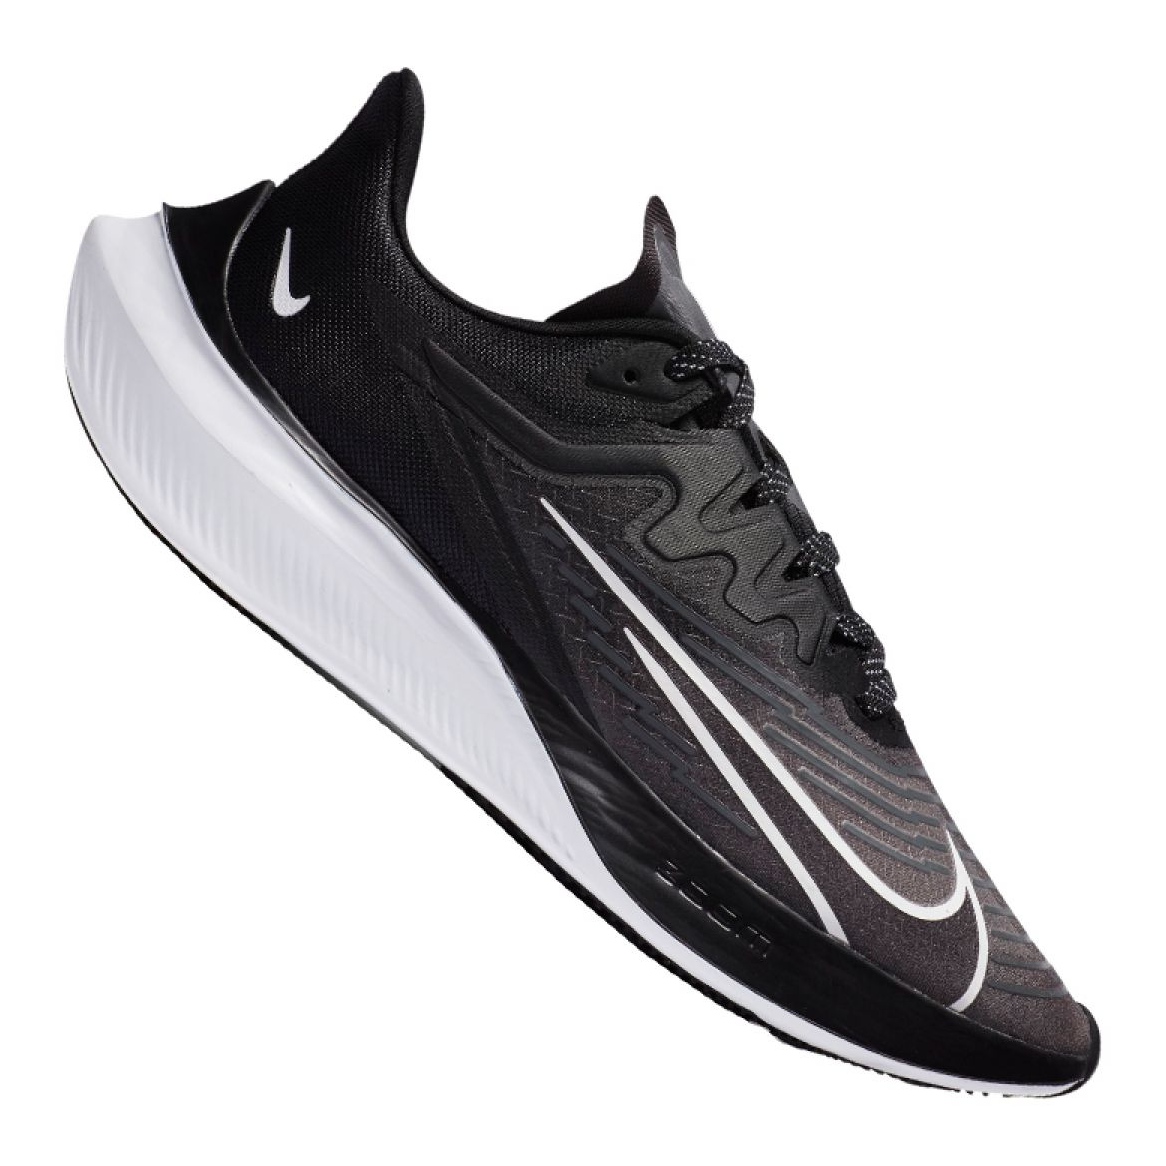 Buty biegowe Nike Zoom Gravity 2 M CK2571